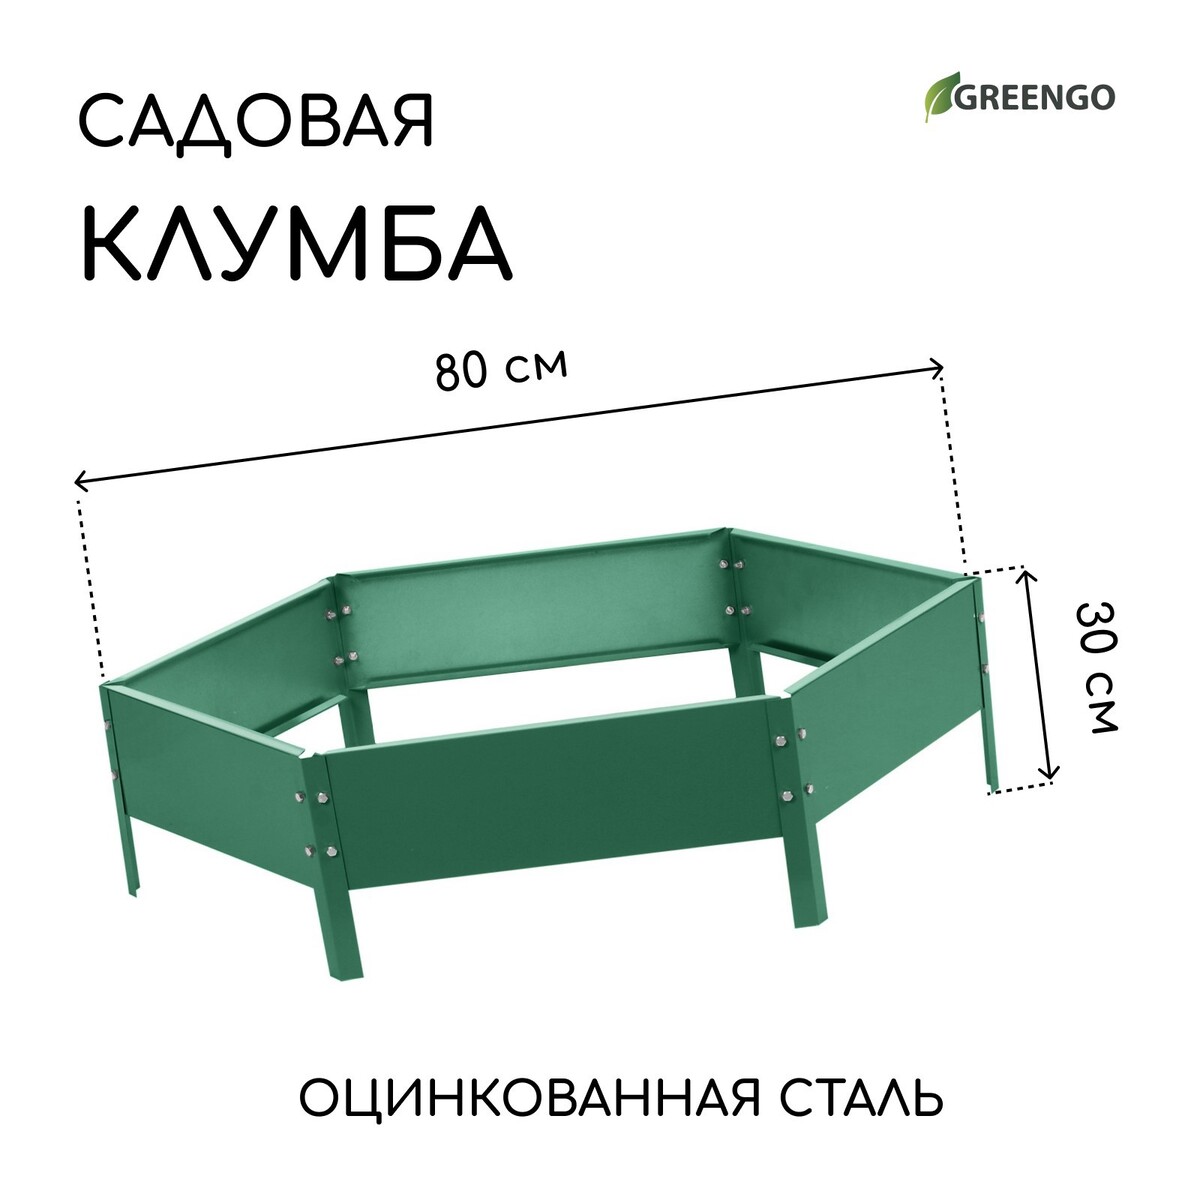 Клумба оцинкованная, d = 80 см, h = 15 см, зеленая, greengo клумба оцинкованная 50 × 15 см ярко зеленая